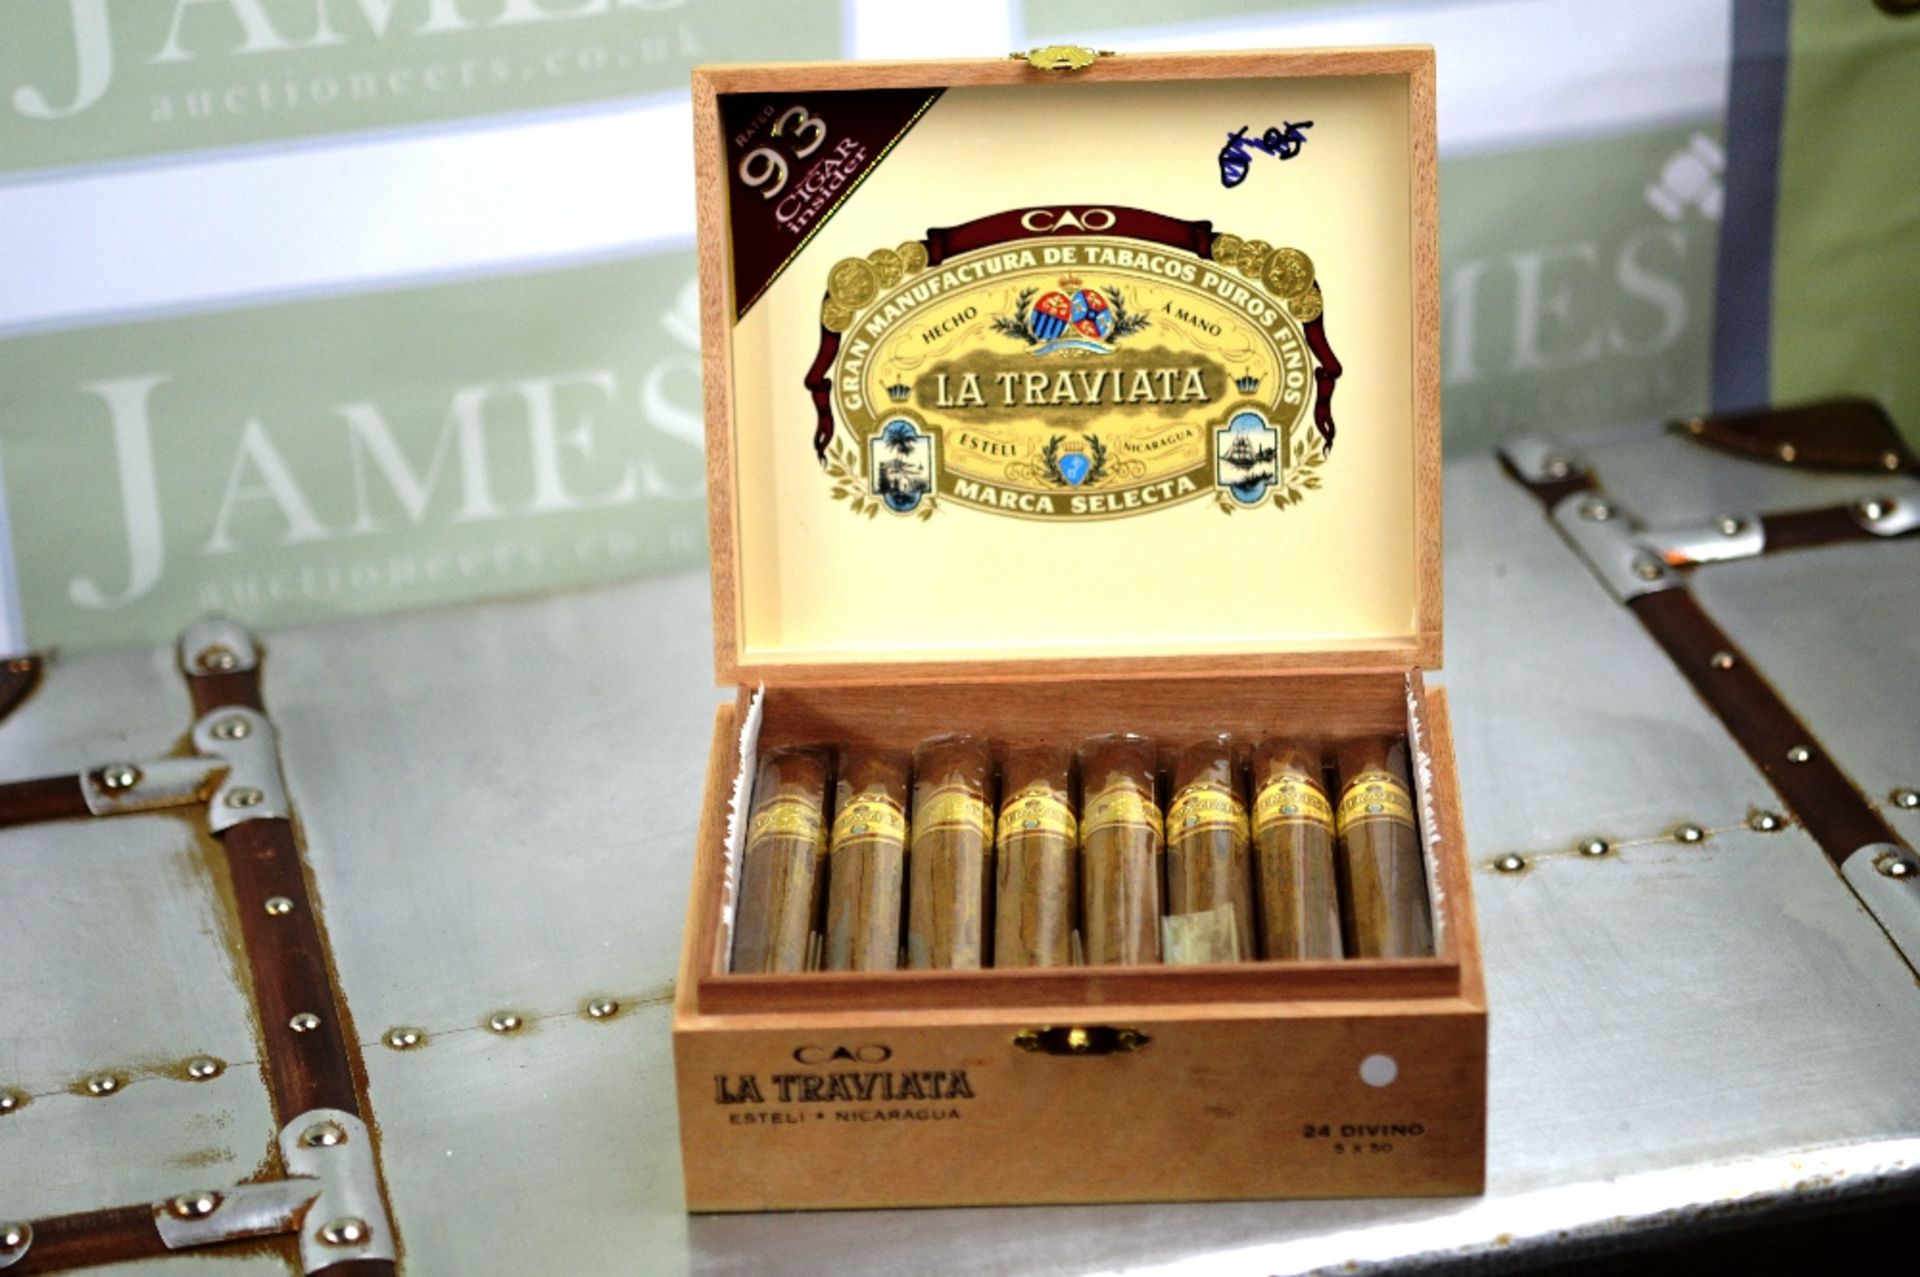 La Traviatta Top quality cigars in original case, imported